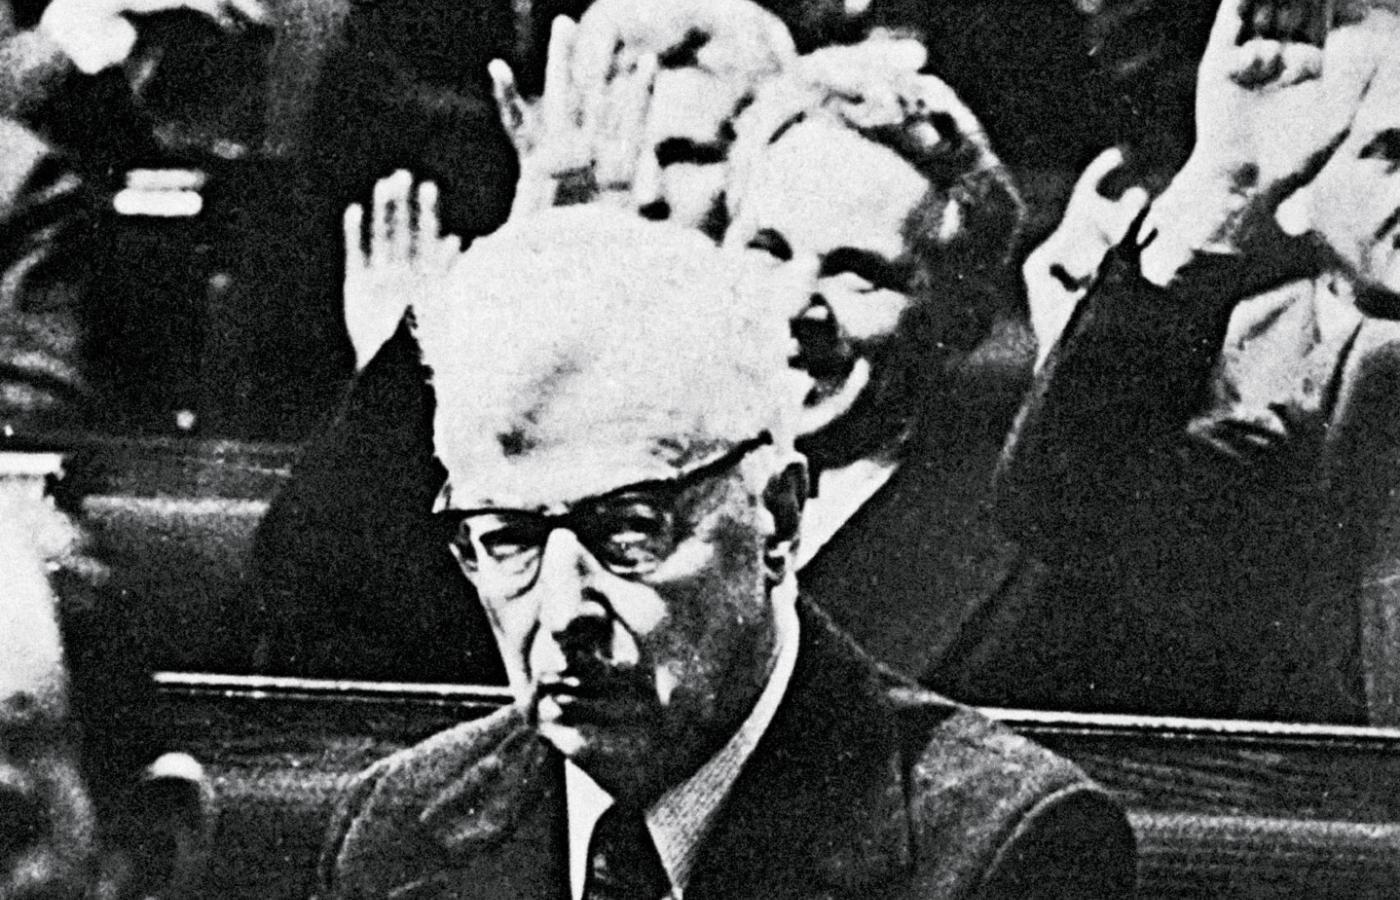 Stanisław Stomma, poseł z katolickiego koła Znak, protestuje przeciwko zmianom w konstytucji PRL, wstrzymując się od głosu podczas głosowania w Sejmie, 10 lutego 1976 r.